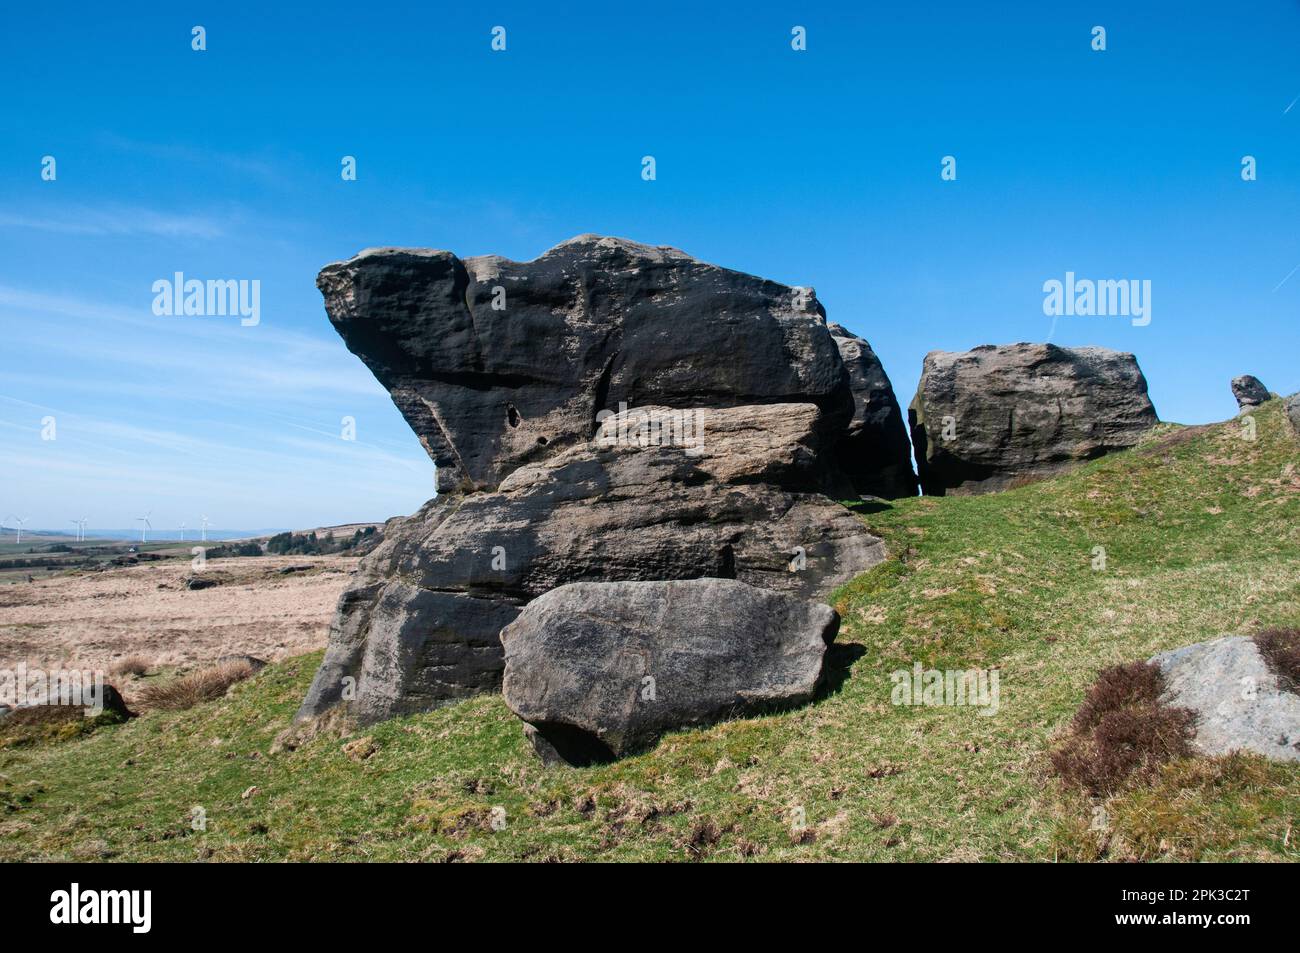 Around the UK - Whirlow Stones, Bridestones Moor, Todmorden, West Yorkshire, UK Stock Photo